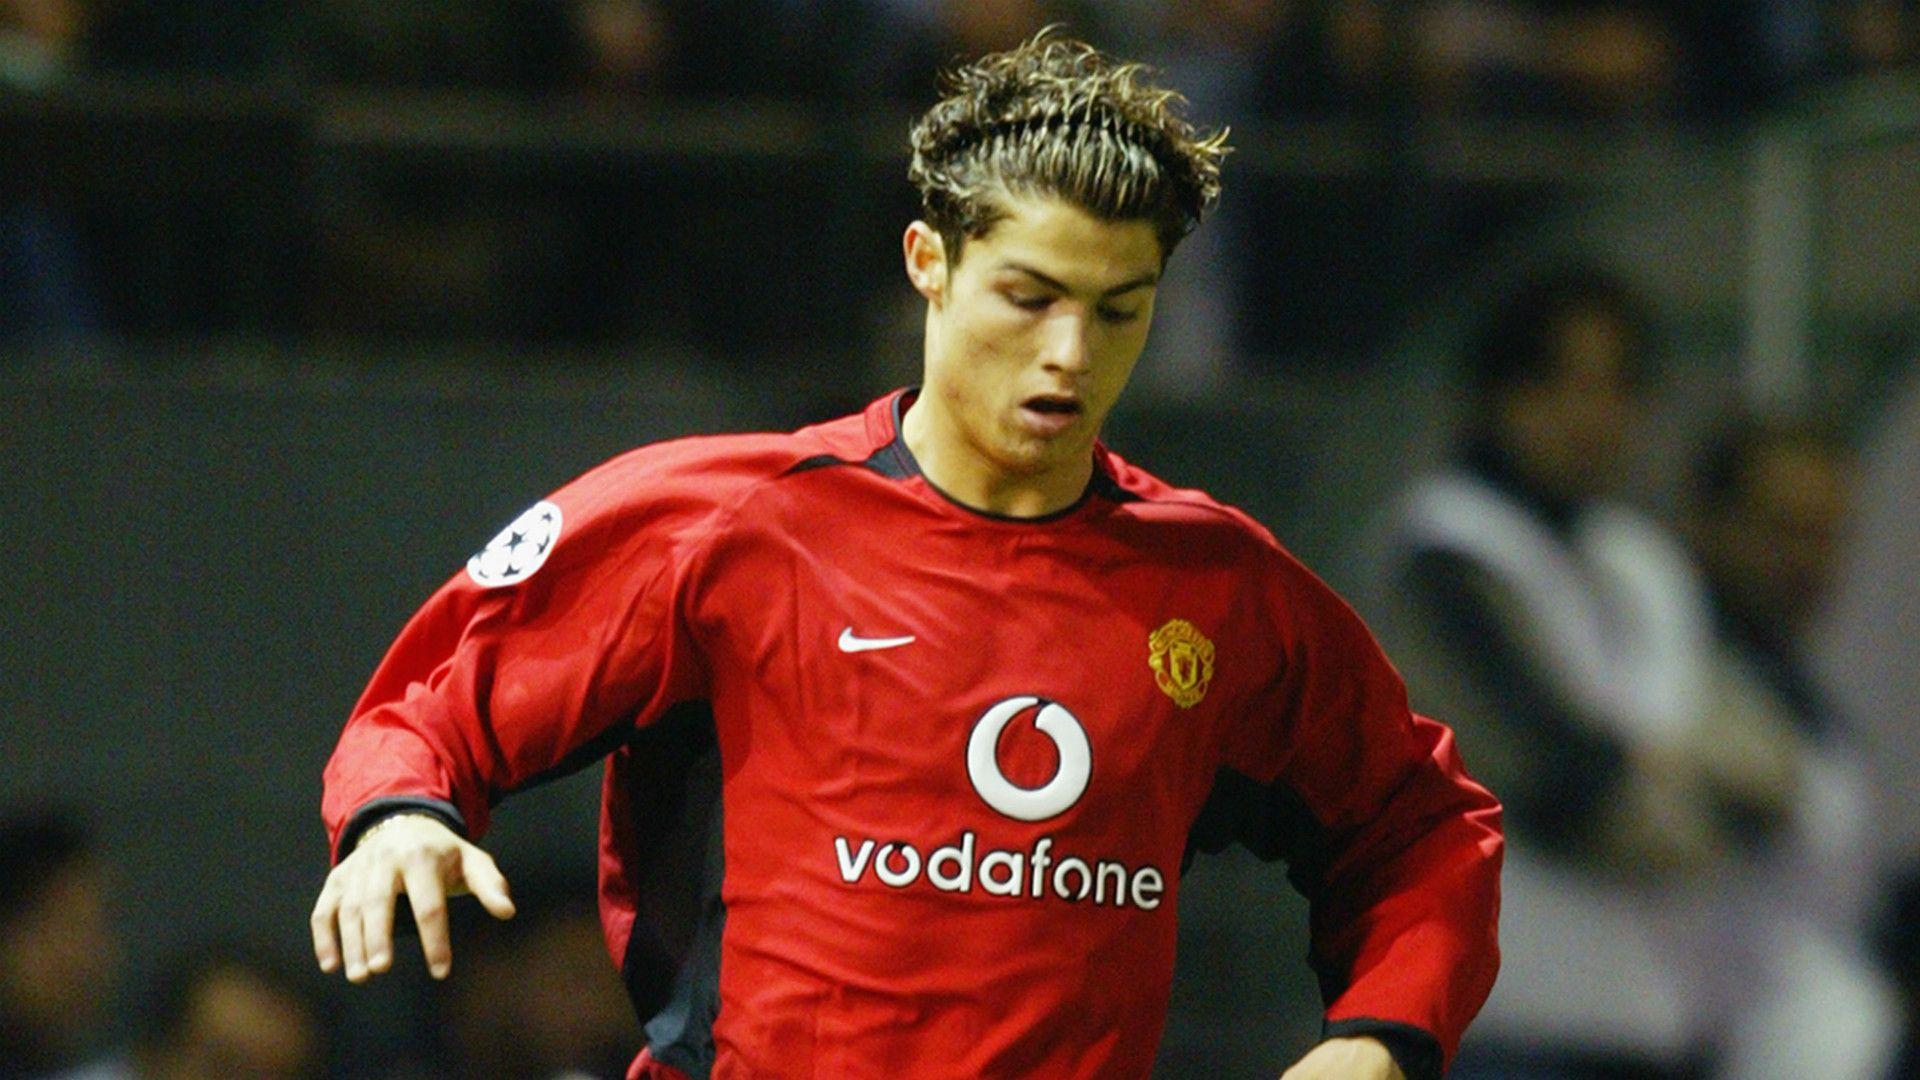 Cr7 Manchester United - Cristiano Ronaldo in Manchester United v Aston